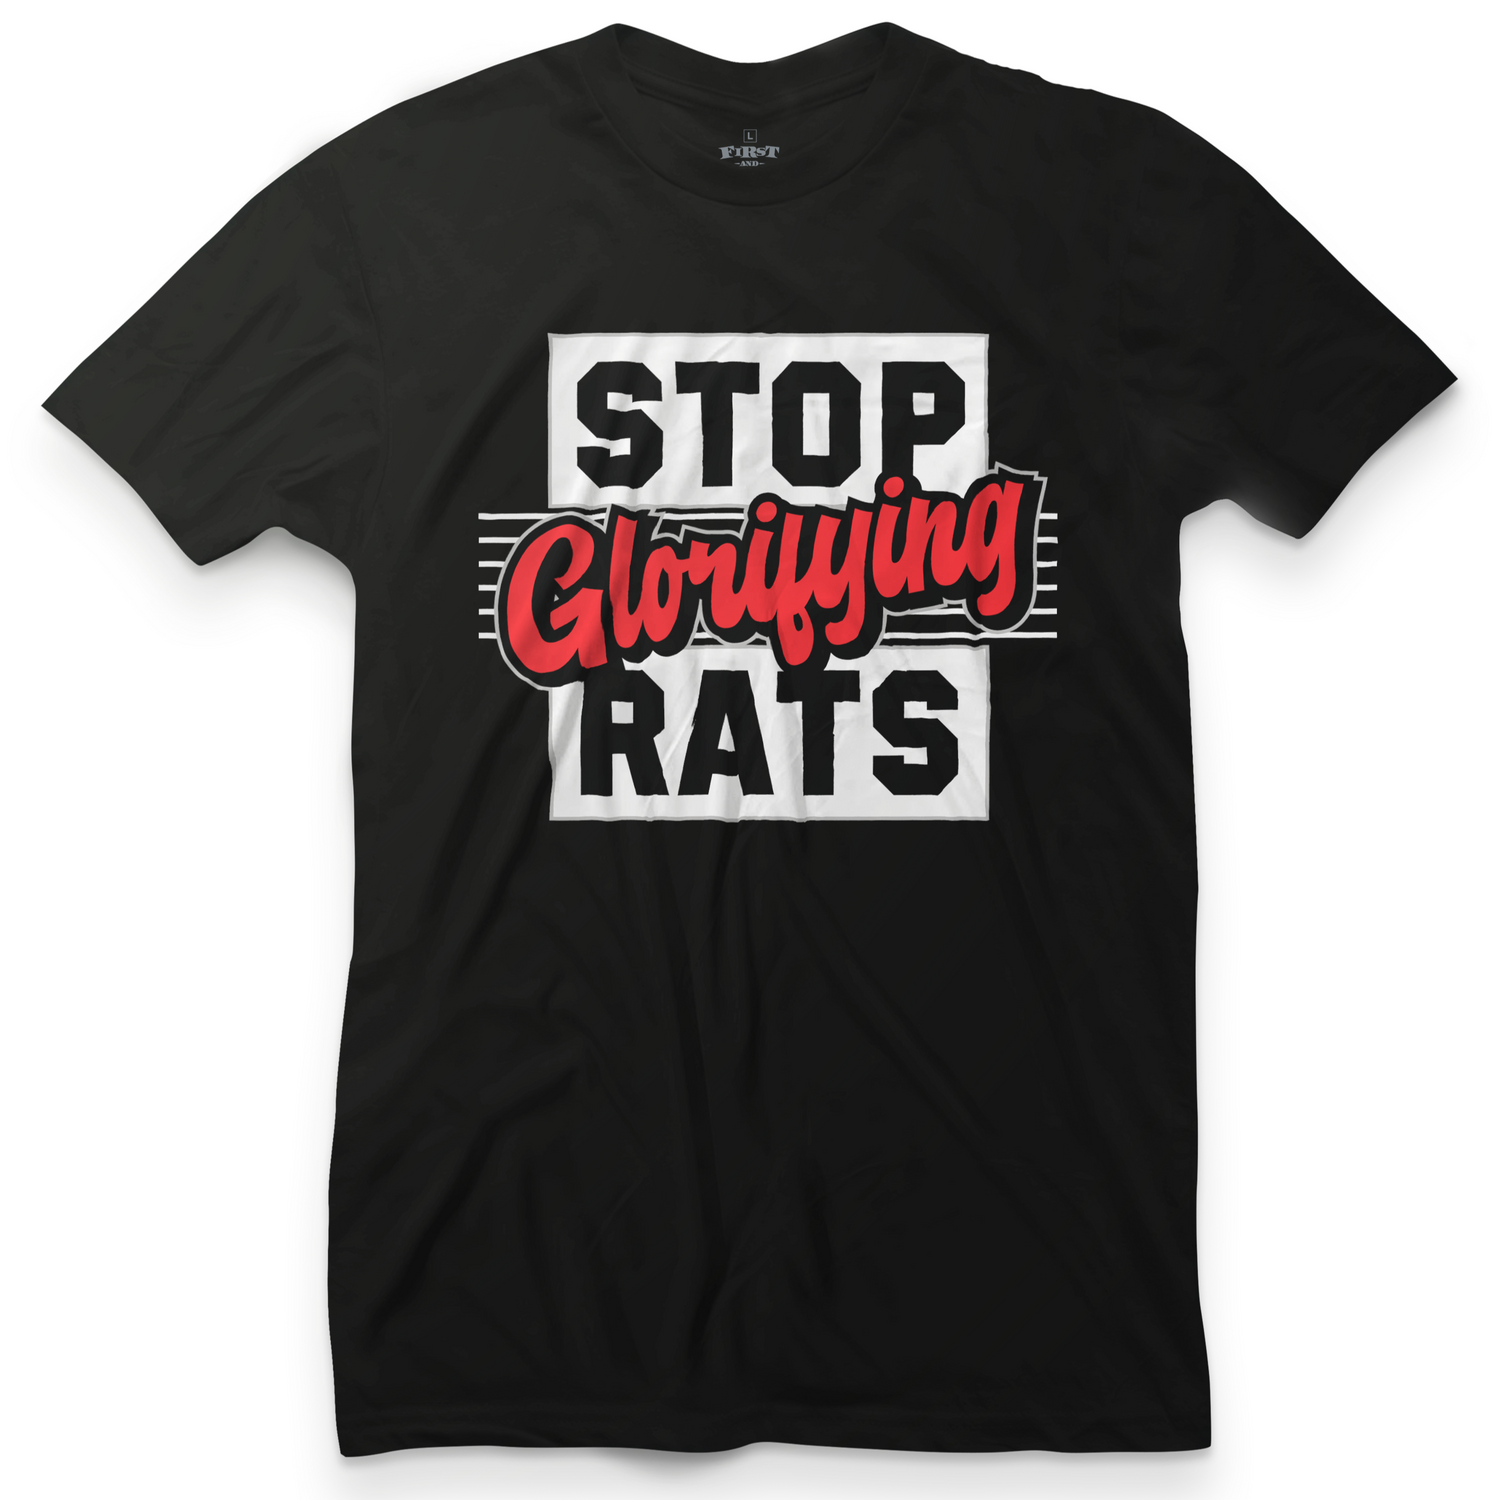 Stop glorifying rats